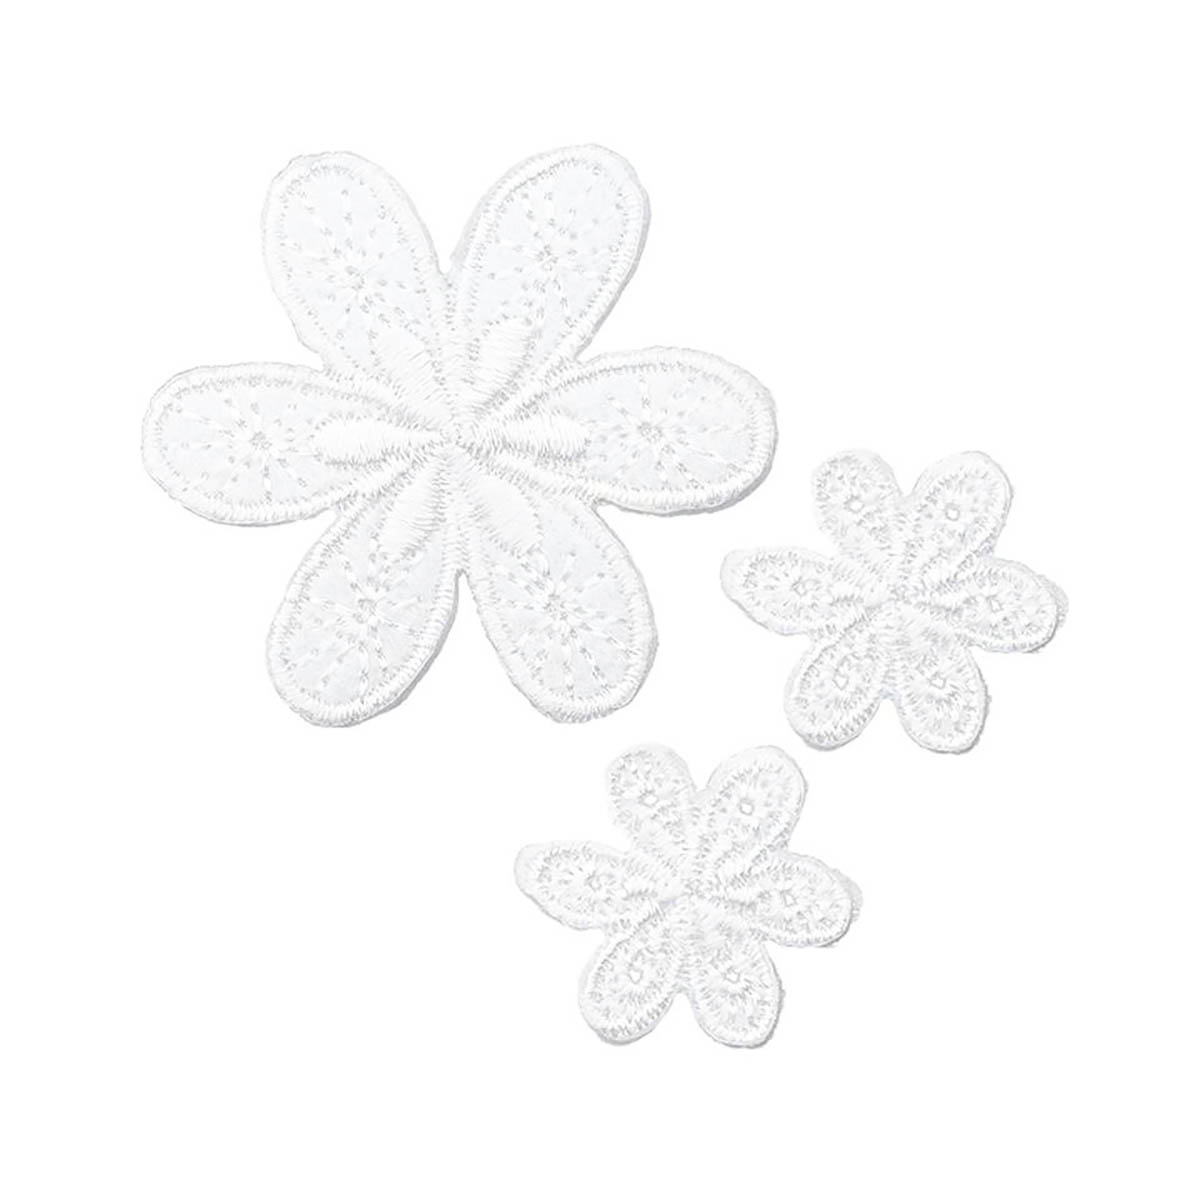 Термоаппликация Prym нашивка Цветы белые 3 шт для ремонта и украшения одежды 926729 - фото 7